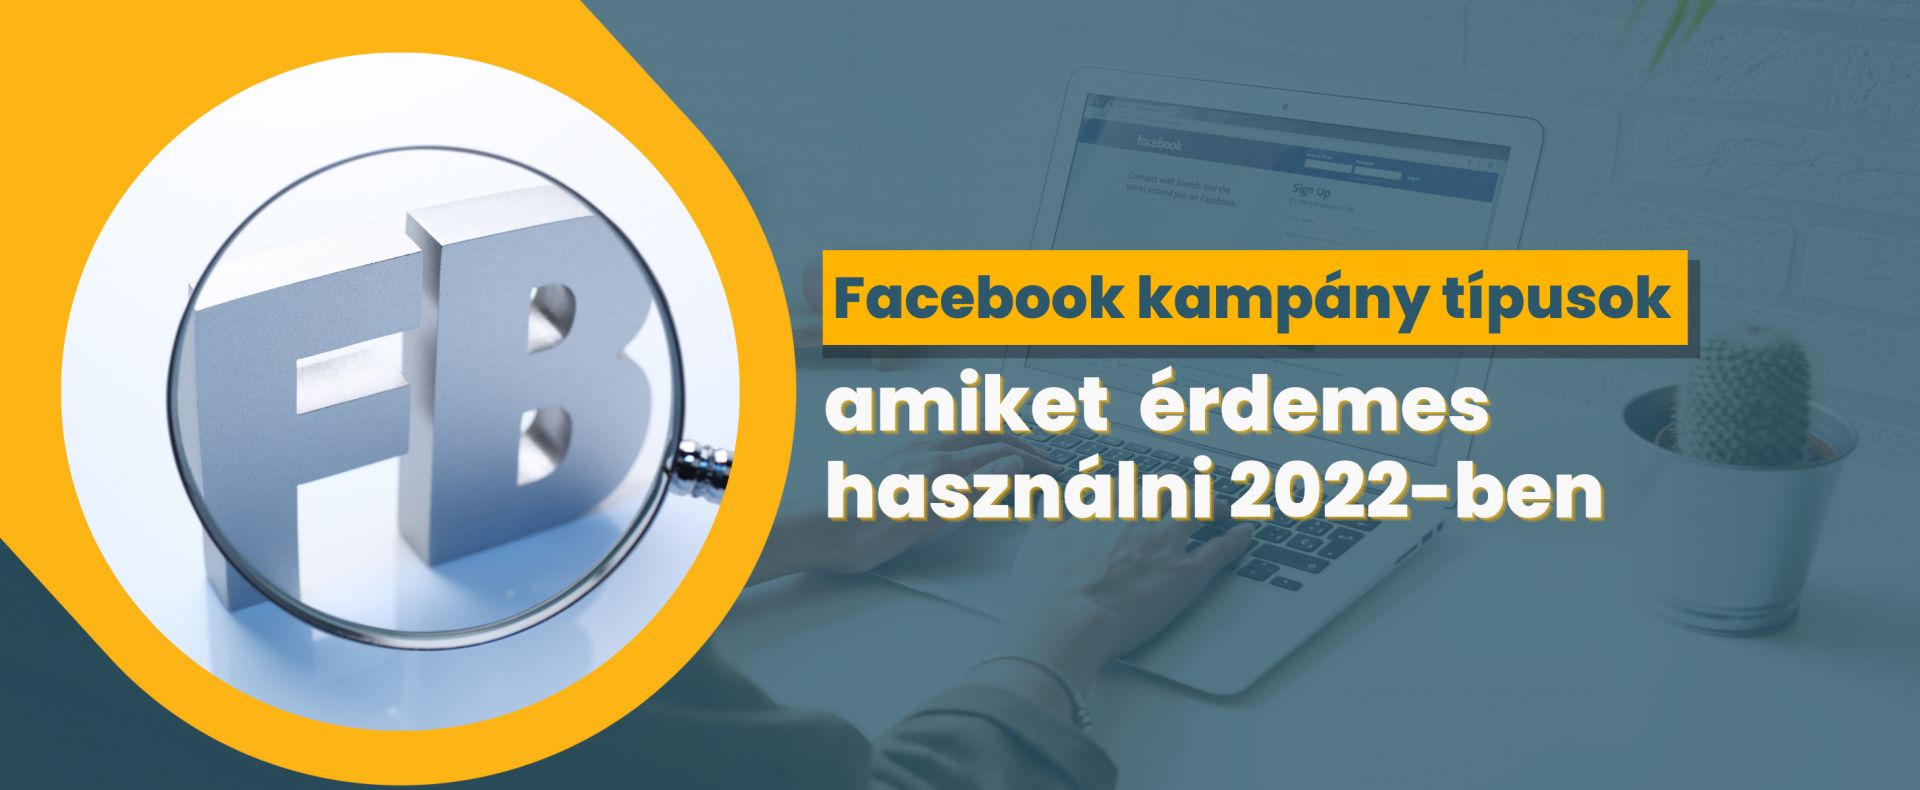 Facebook kampány típusok amiket szerintünk érdemes használni 2022-ben